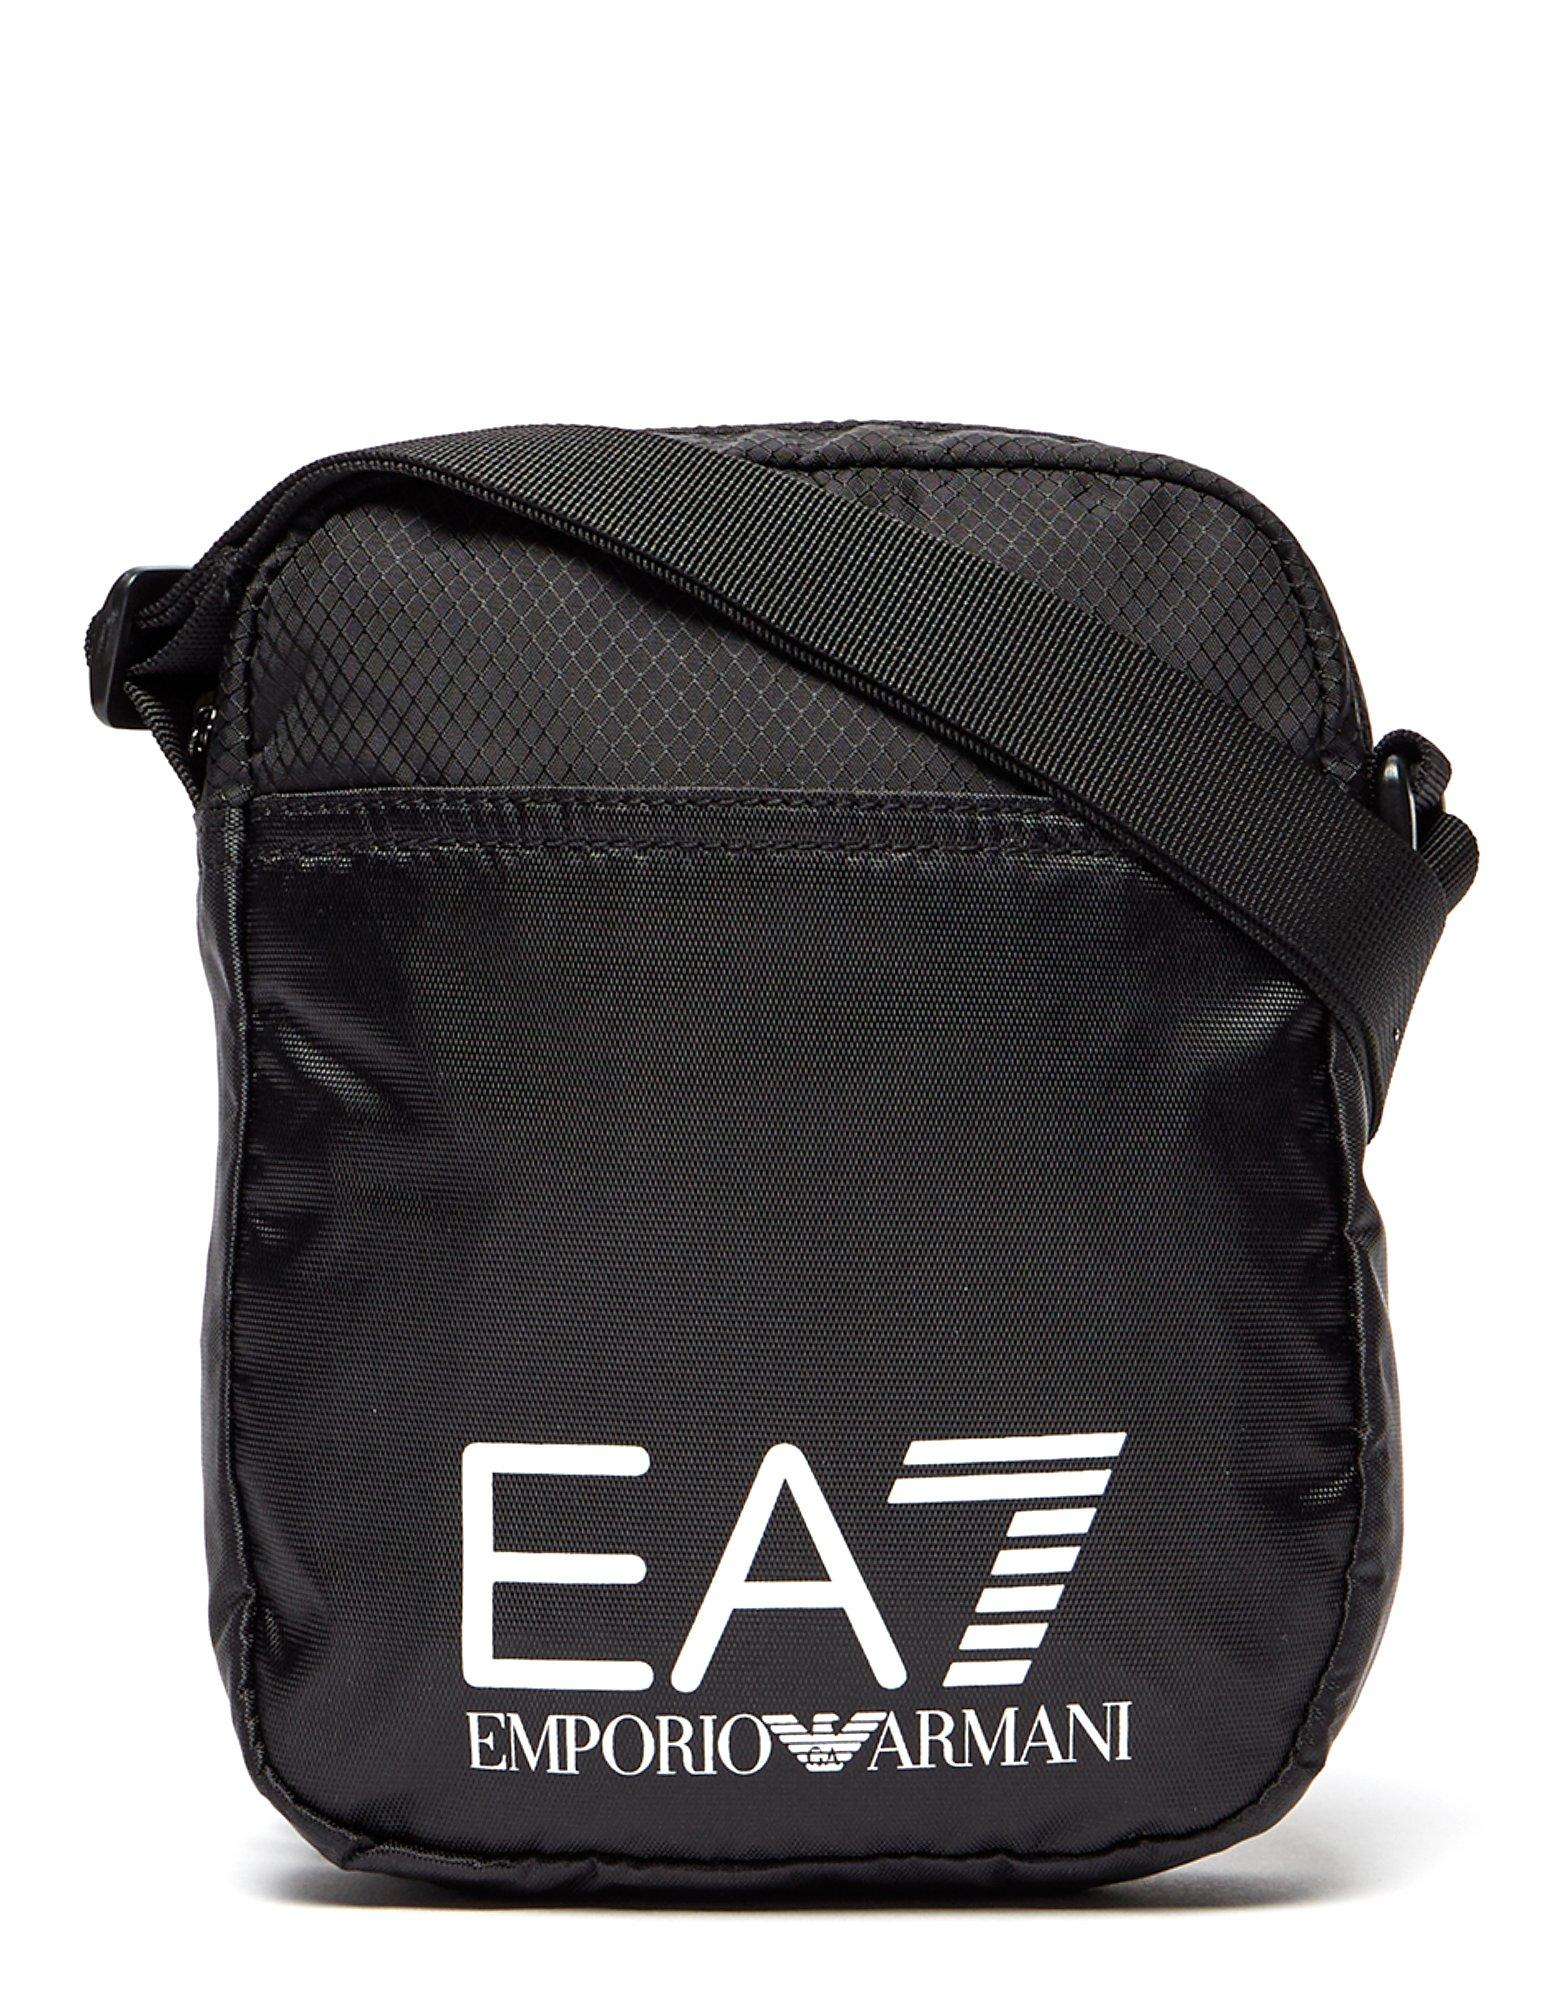 Emporio Armani EA7 Train Logo Small 